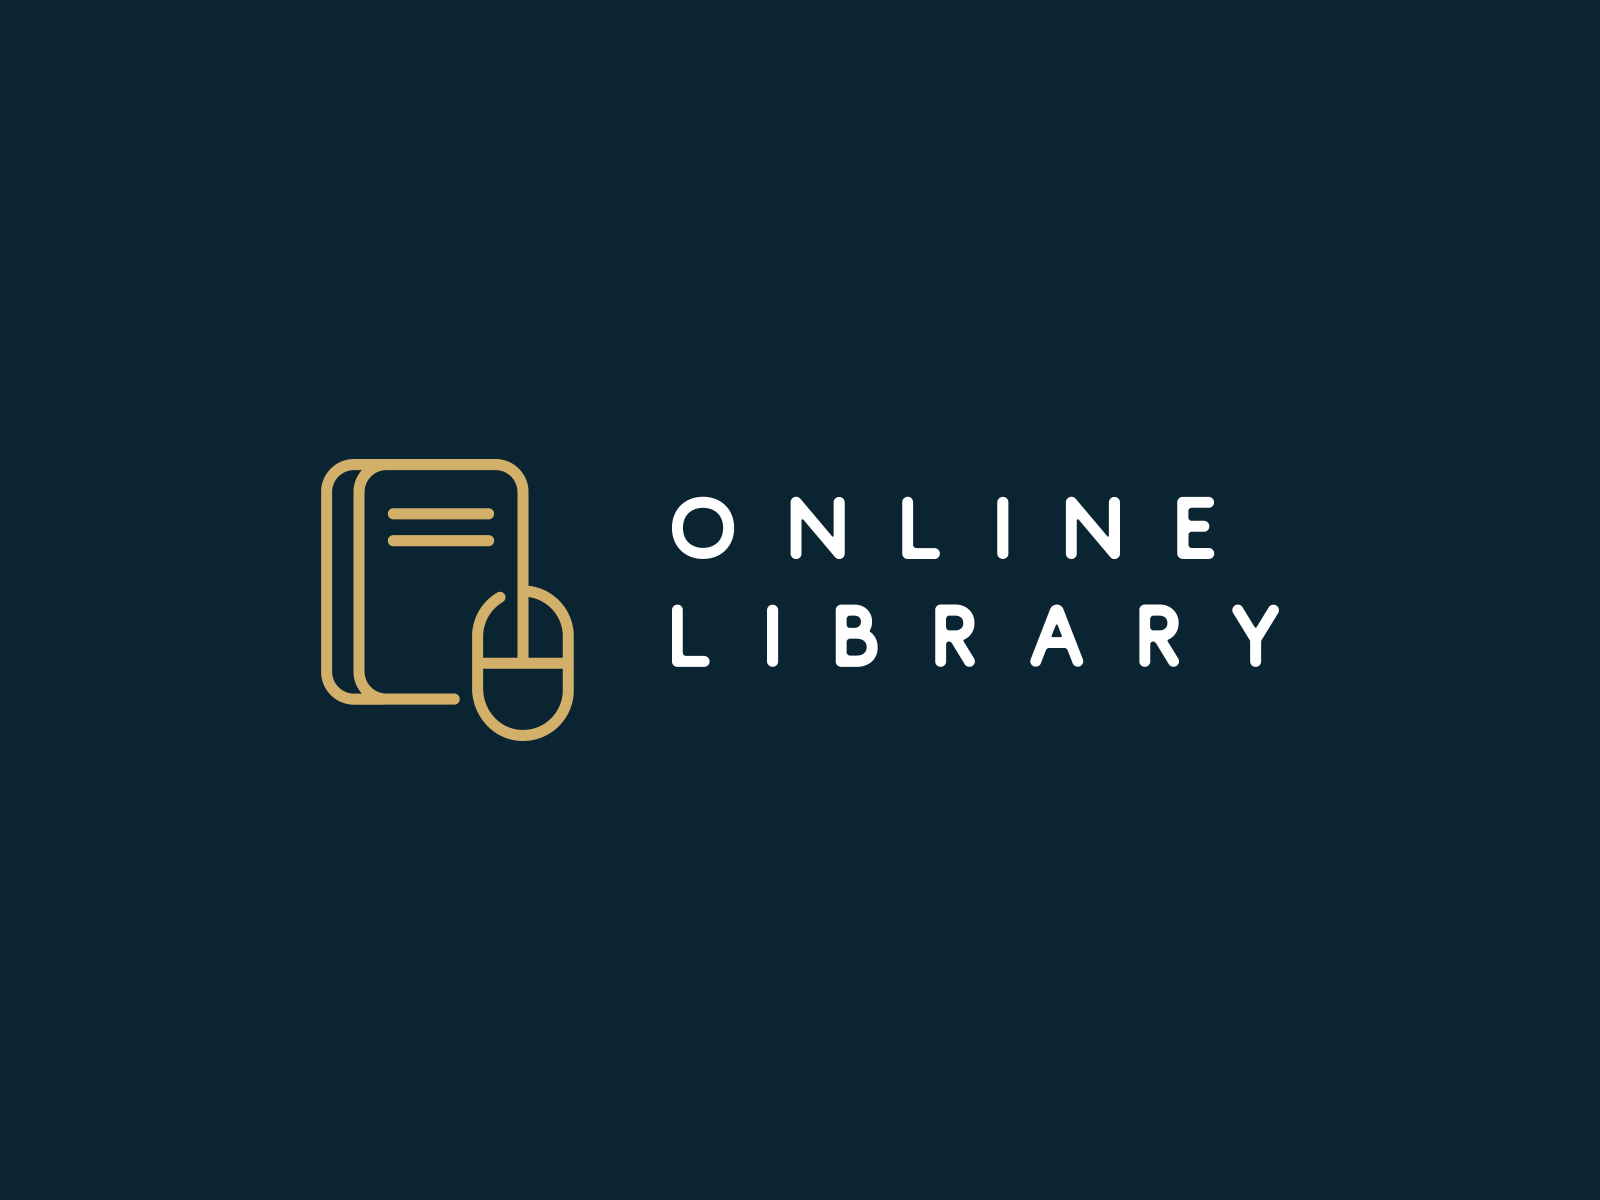 Digital-library-new-logo-v2 by kirstenjadediaz on DeviantArt